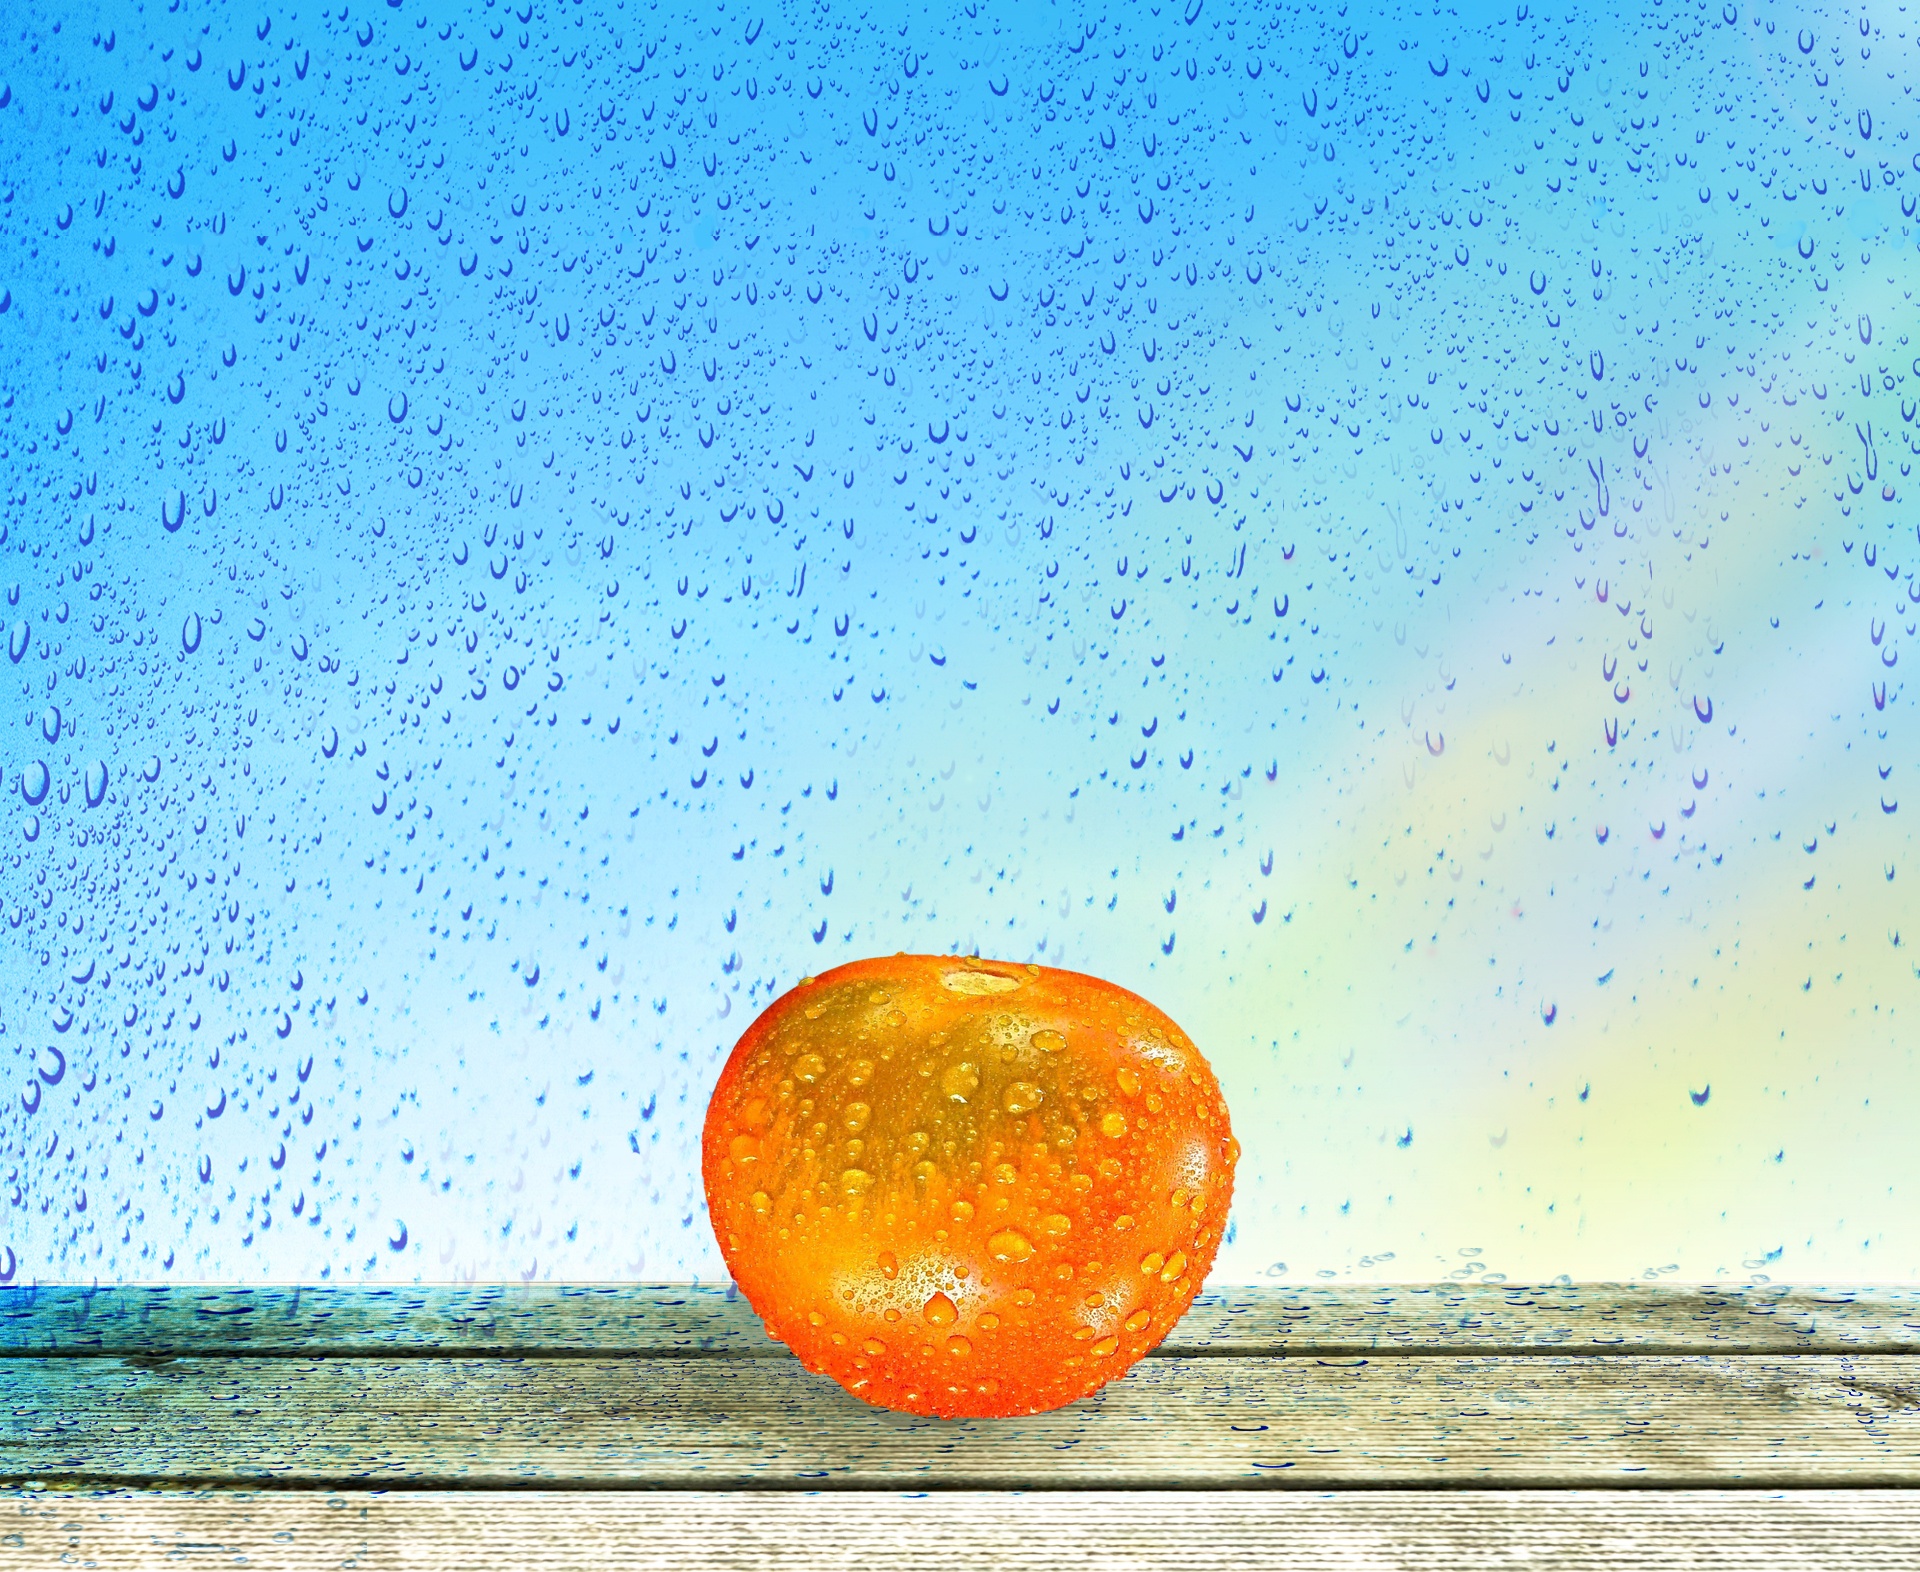 Tomato In The Rain